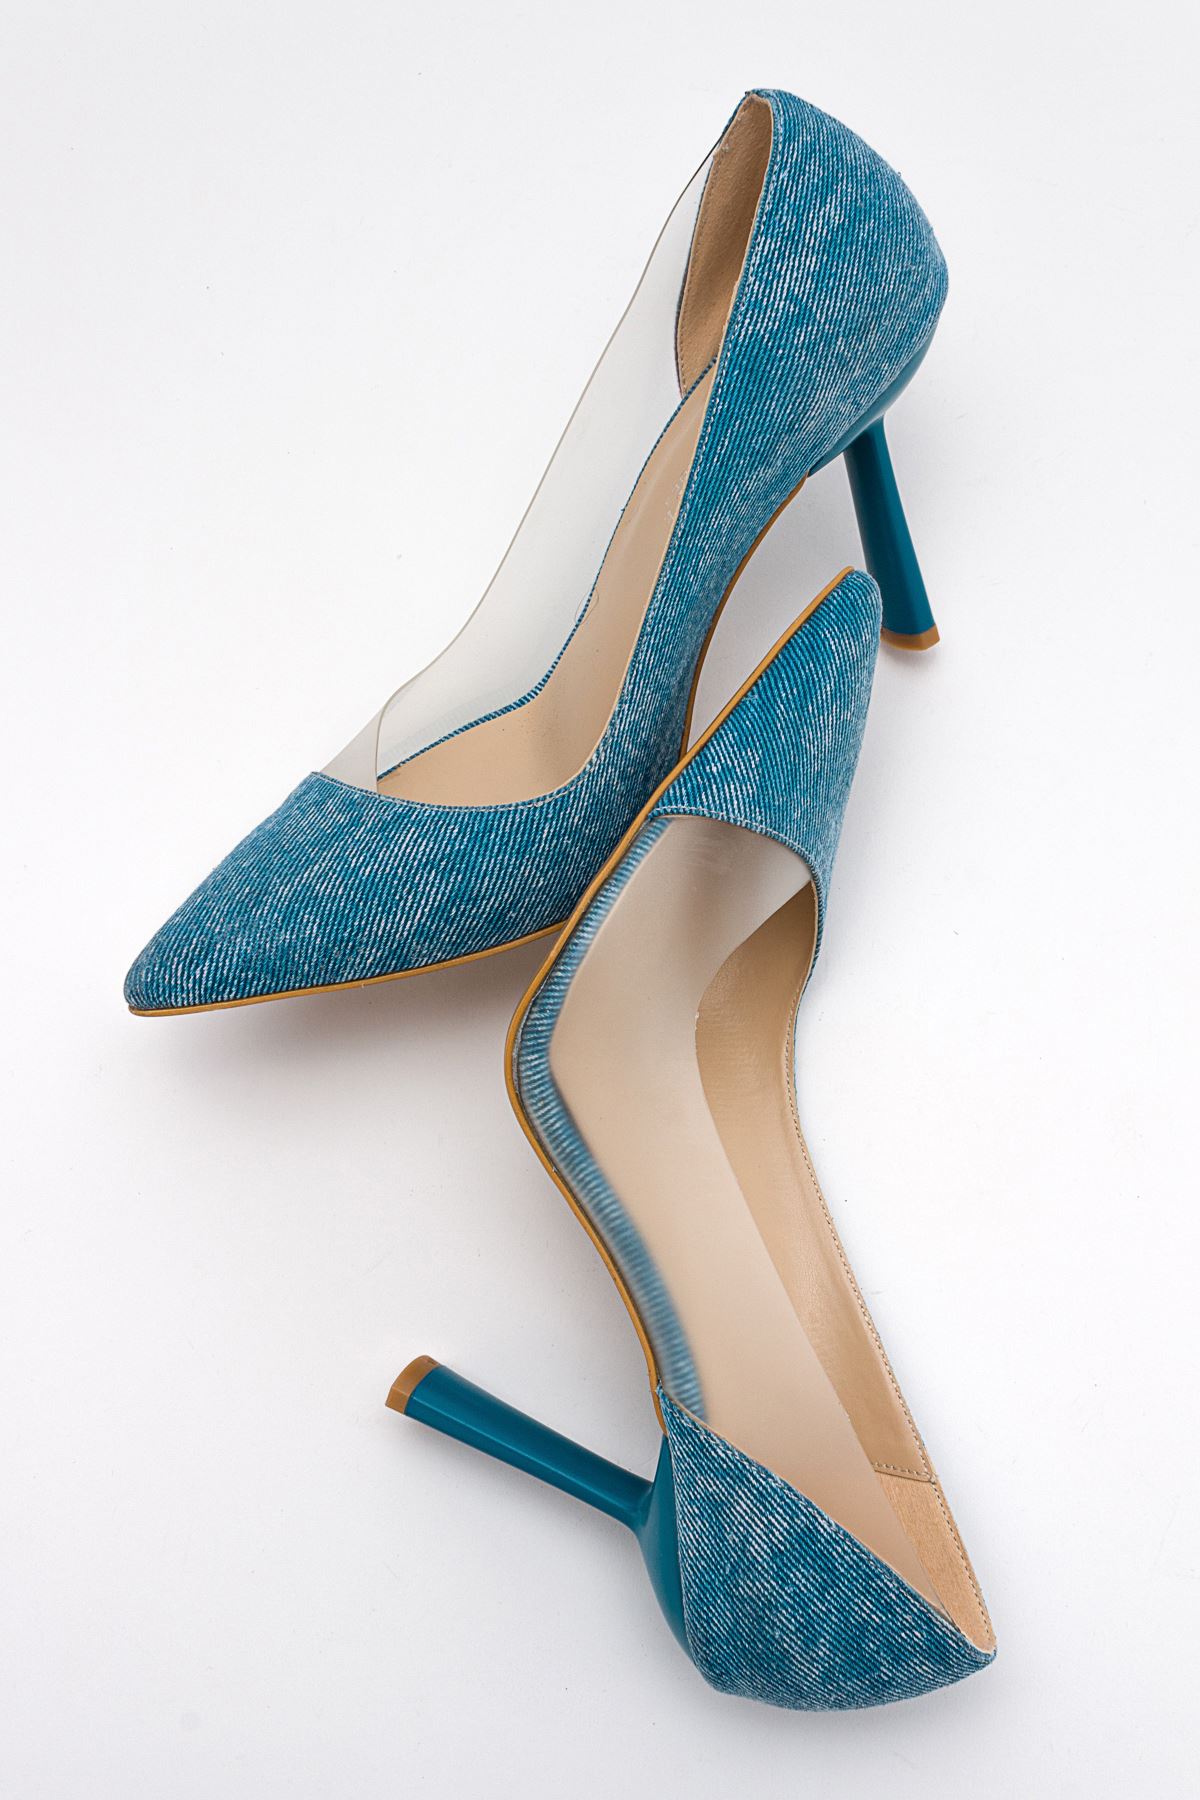 Naomi Şeffaf Dekolteli Stiletto Topuklu Ayakkabı-Kot Mavi